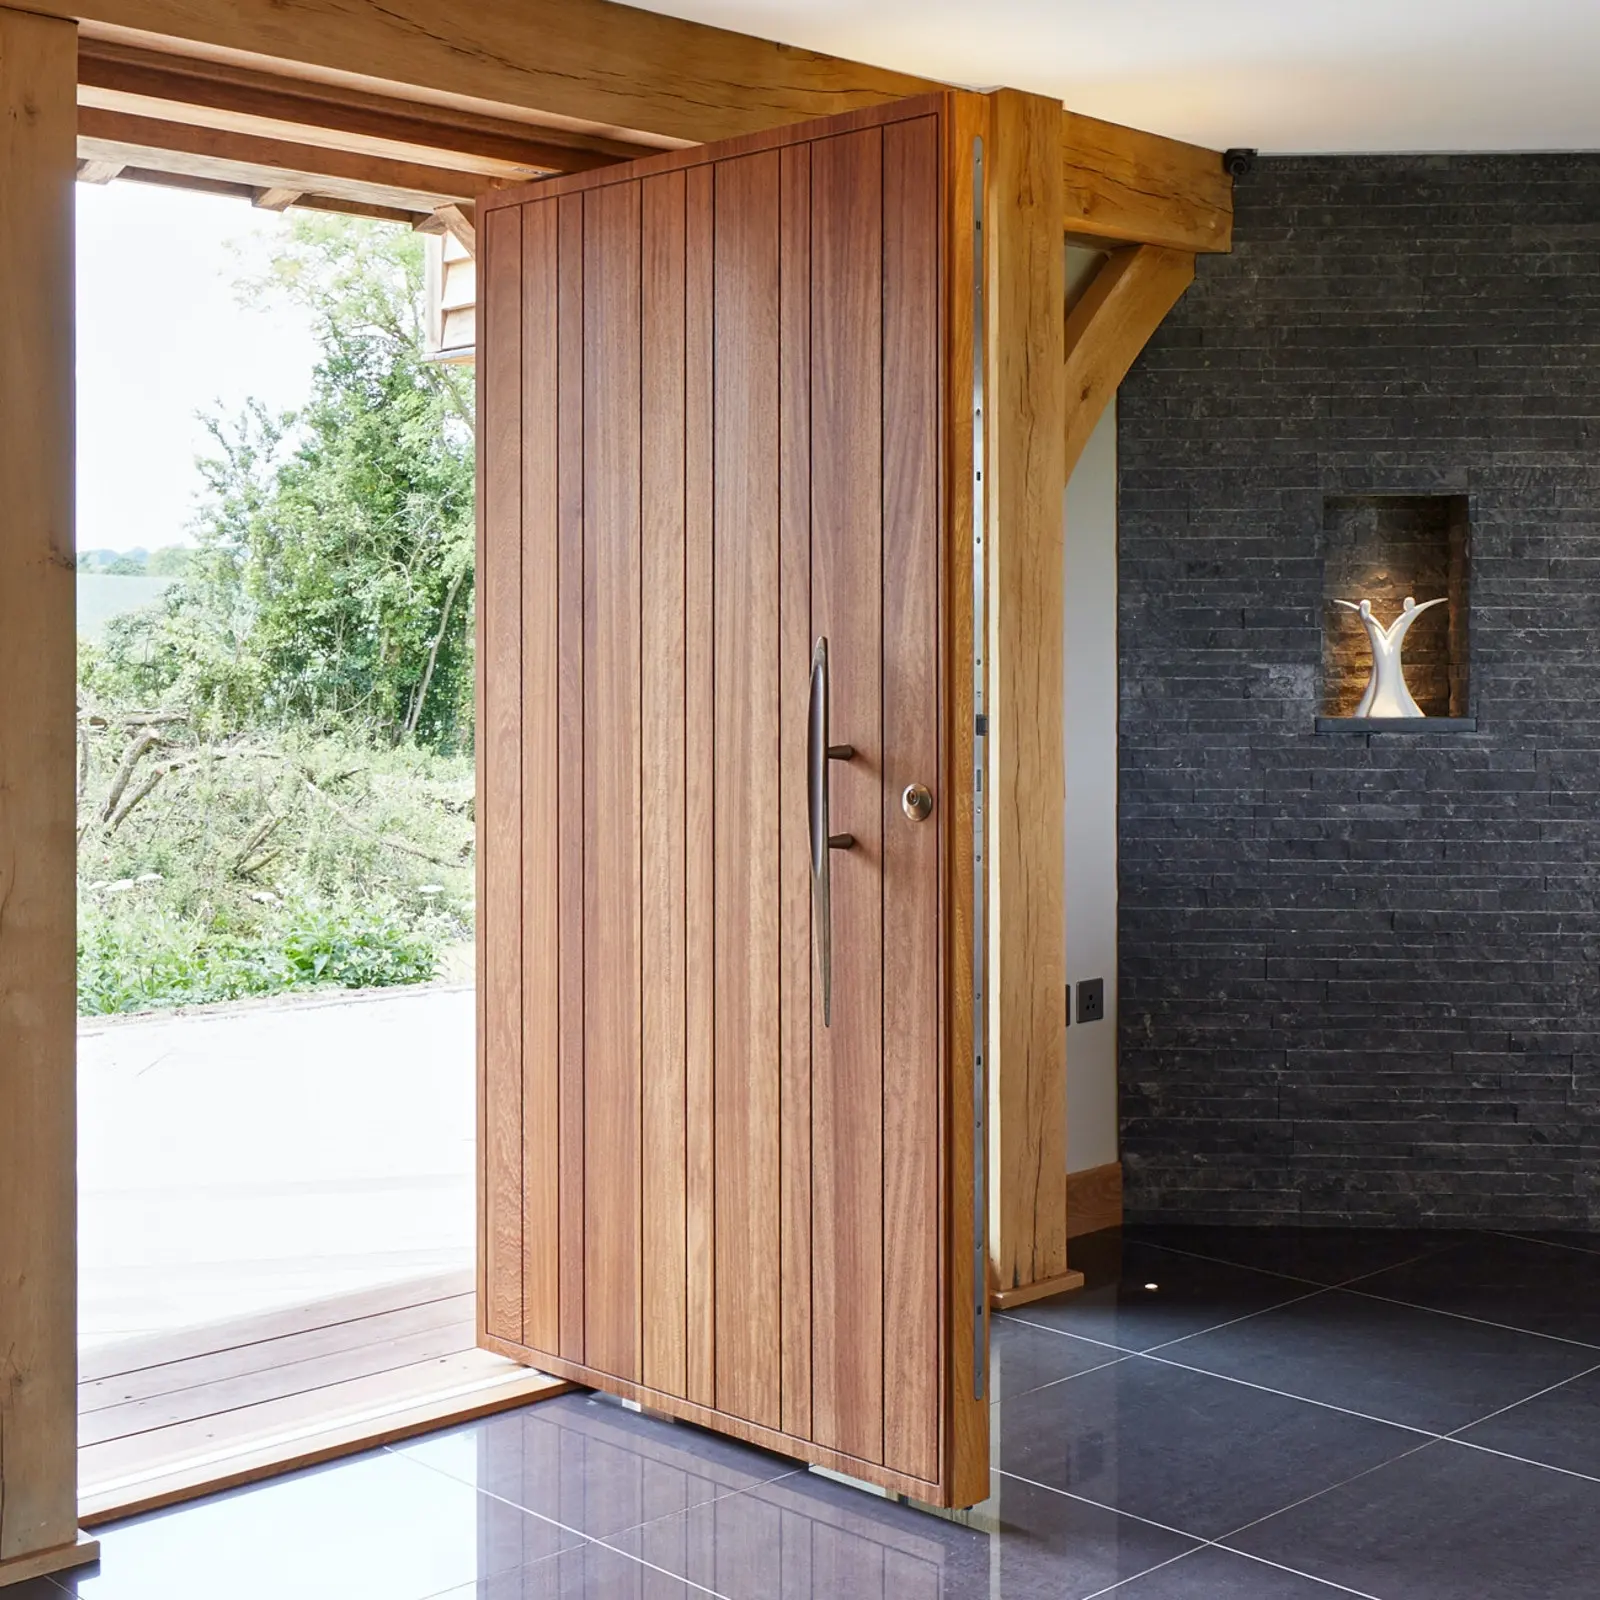 عالية الجودة الحديثة خشبية المواد باب مدخل مخصصة المحورية الباب ل فيلا